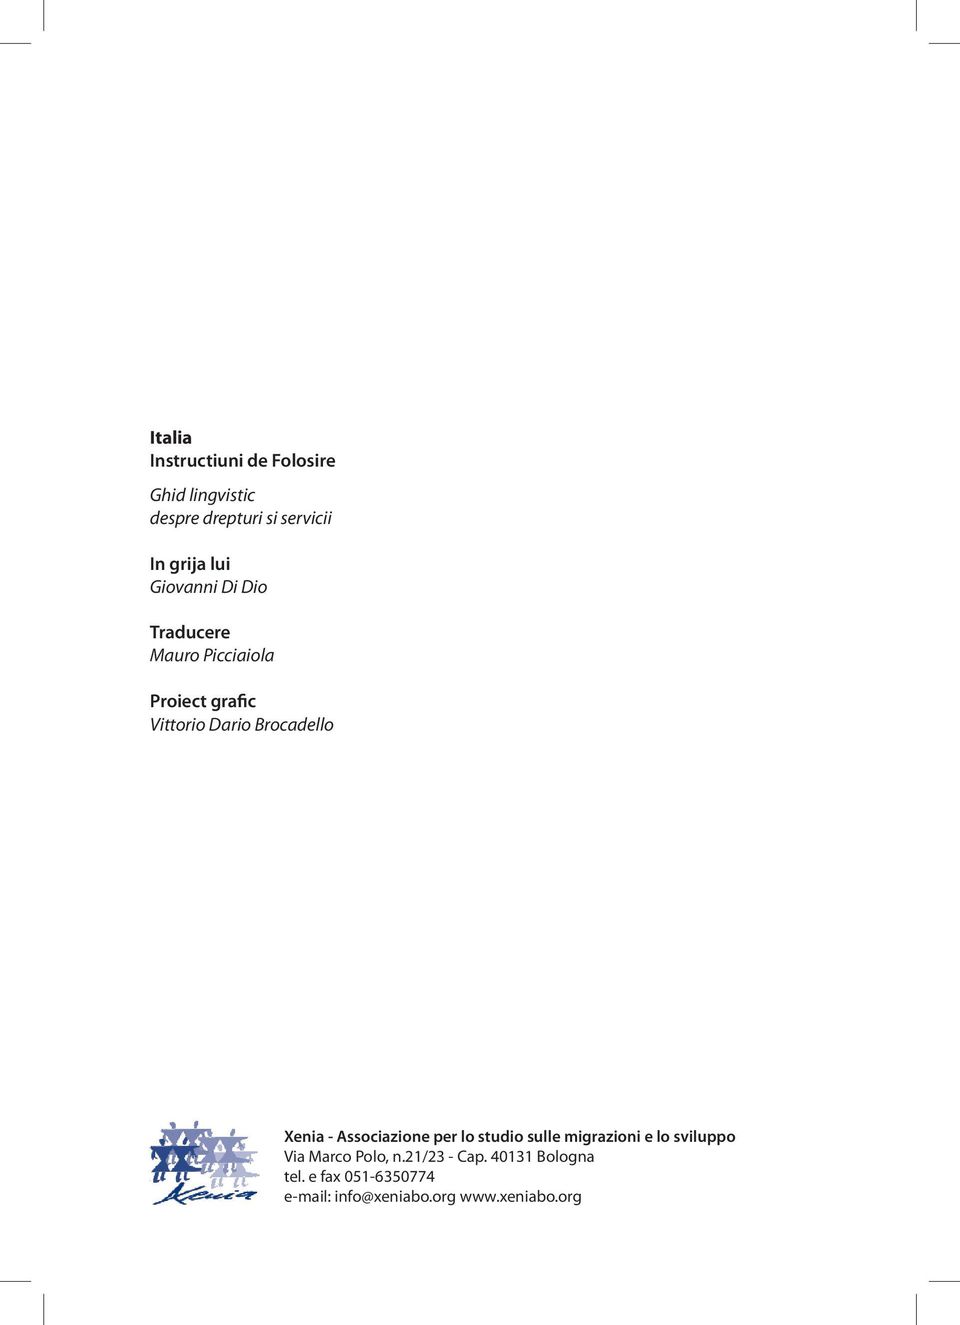 Brocadello Xenia - Associazione per lo studio sulle migrazioni e lo sviluppo Via Marco